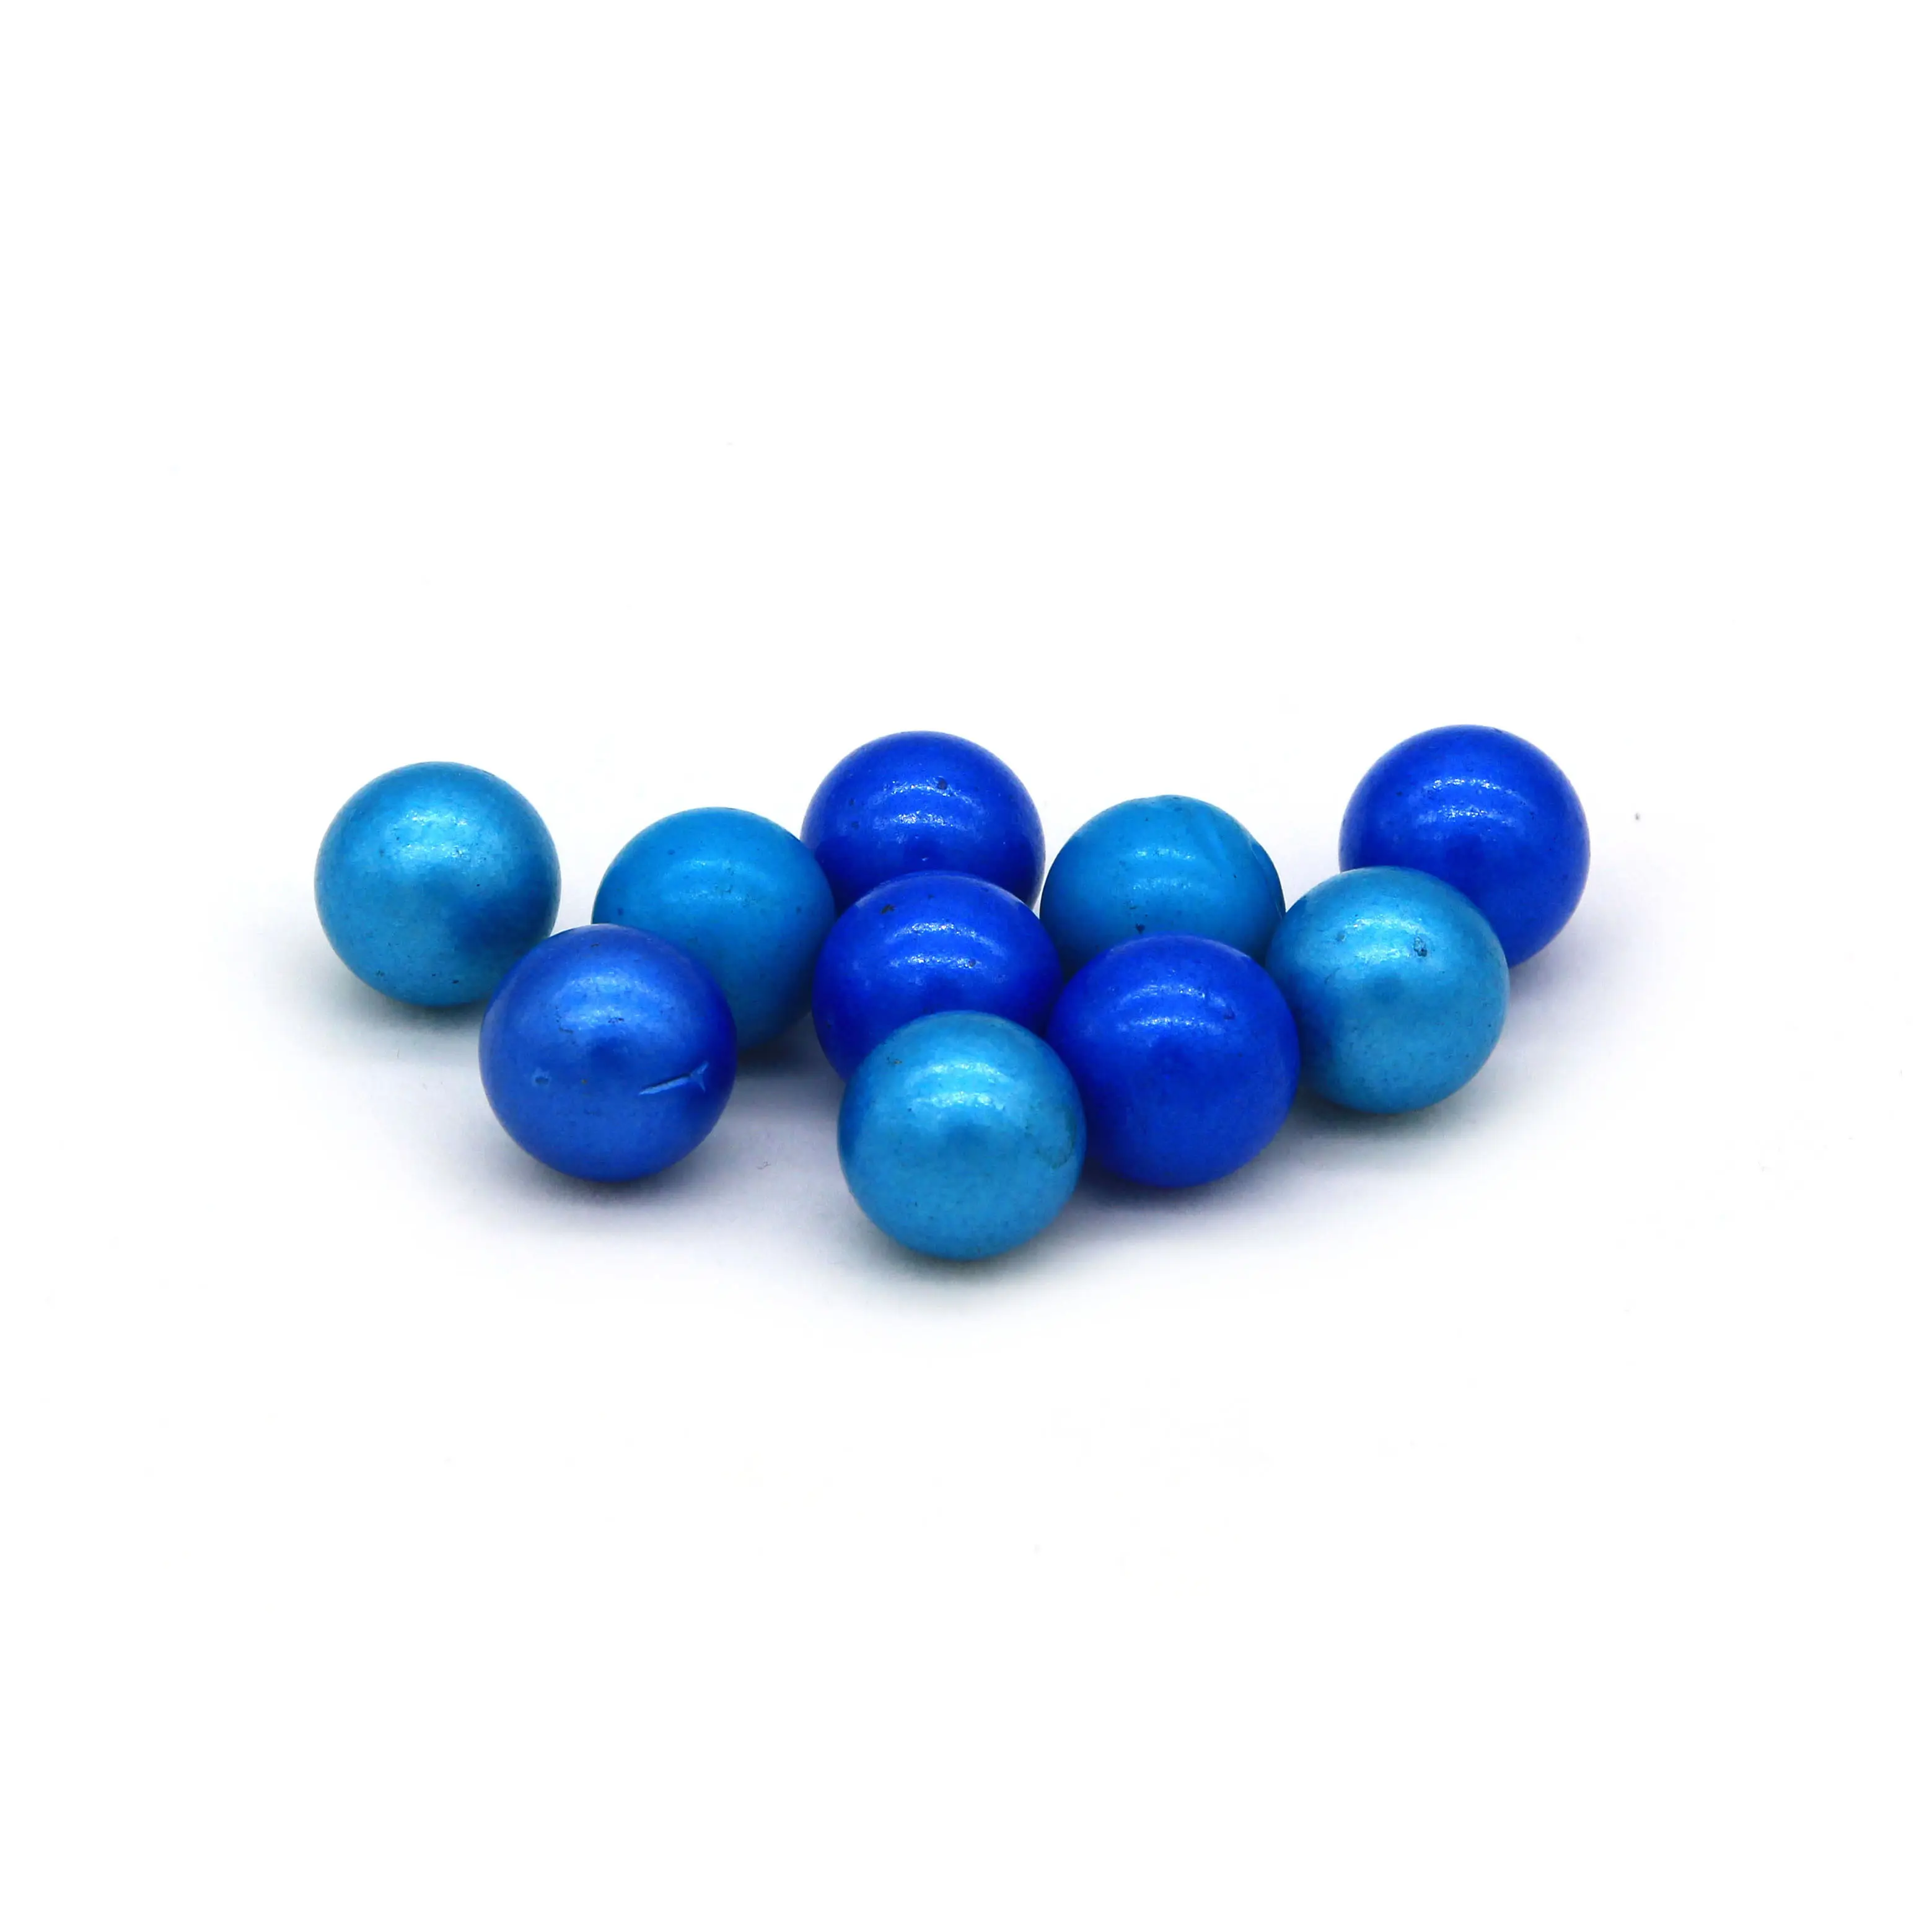 N-K 10 pezzi 16 mm bella sfera di vetro trasparente in vetro marmo giocattolo blu gioco gioco di colore azzurro economico e durevole design pratico e durevole 